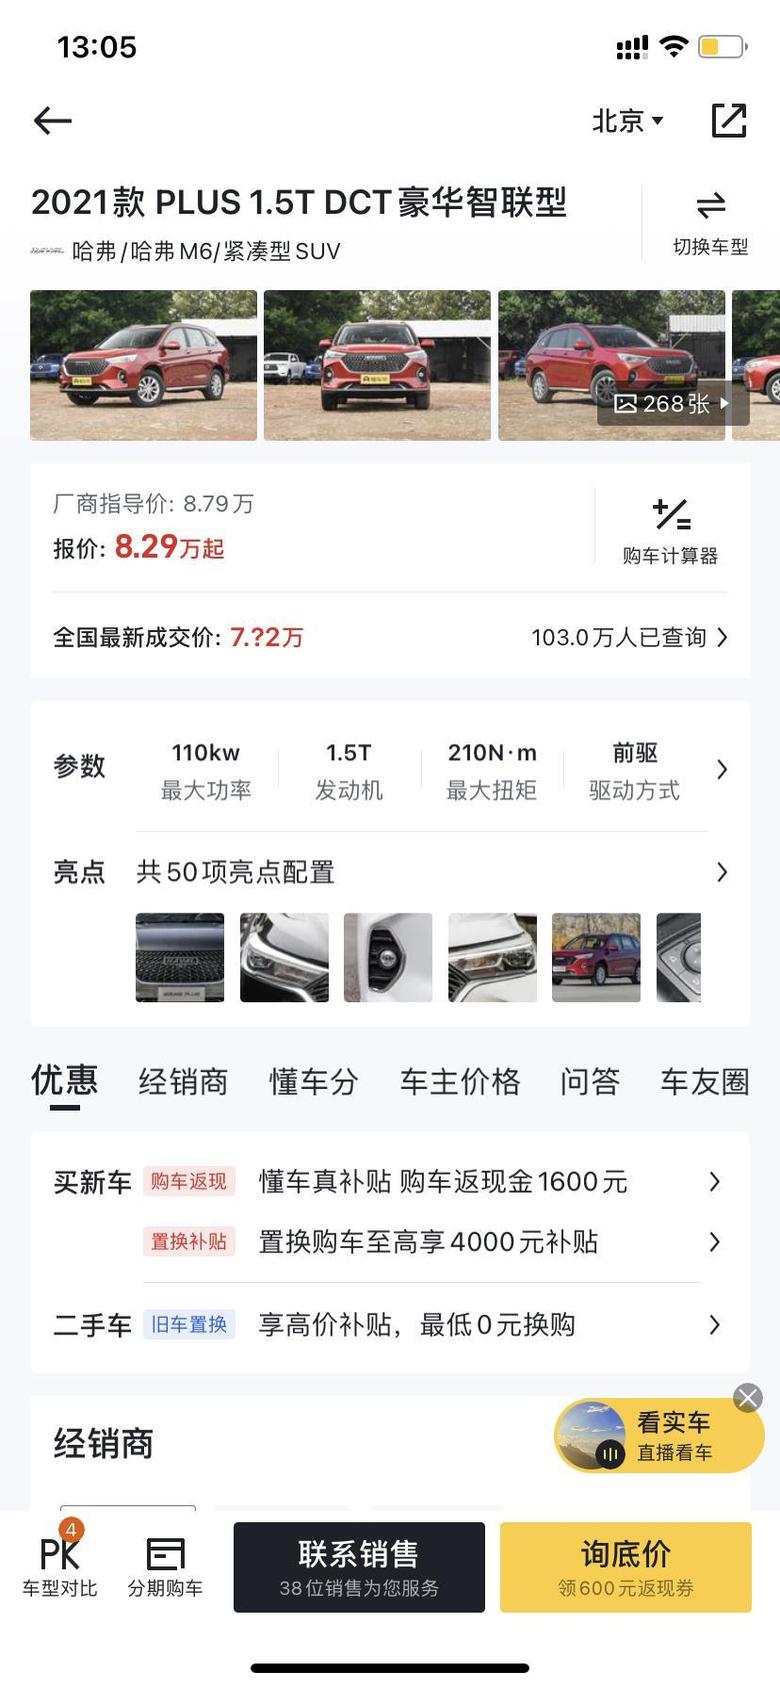 最近想购买哈弗m6自动豪华智联版，想问问大家都是多少钱下来的，坐标北京。欢迎大佬前来